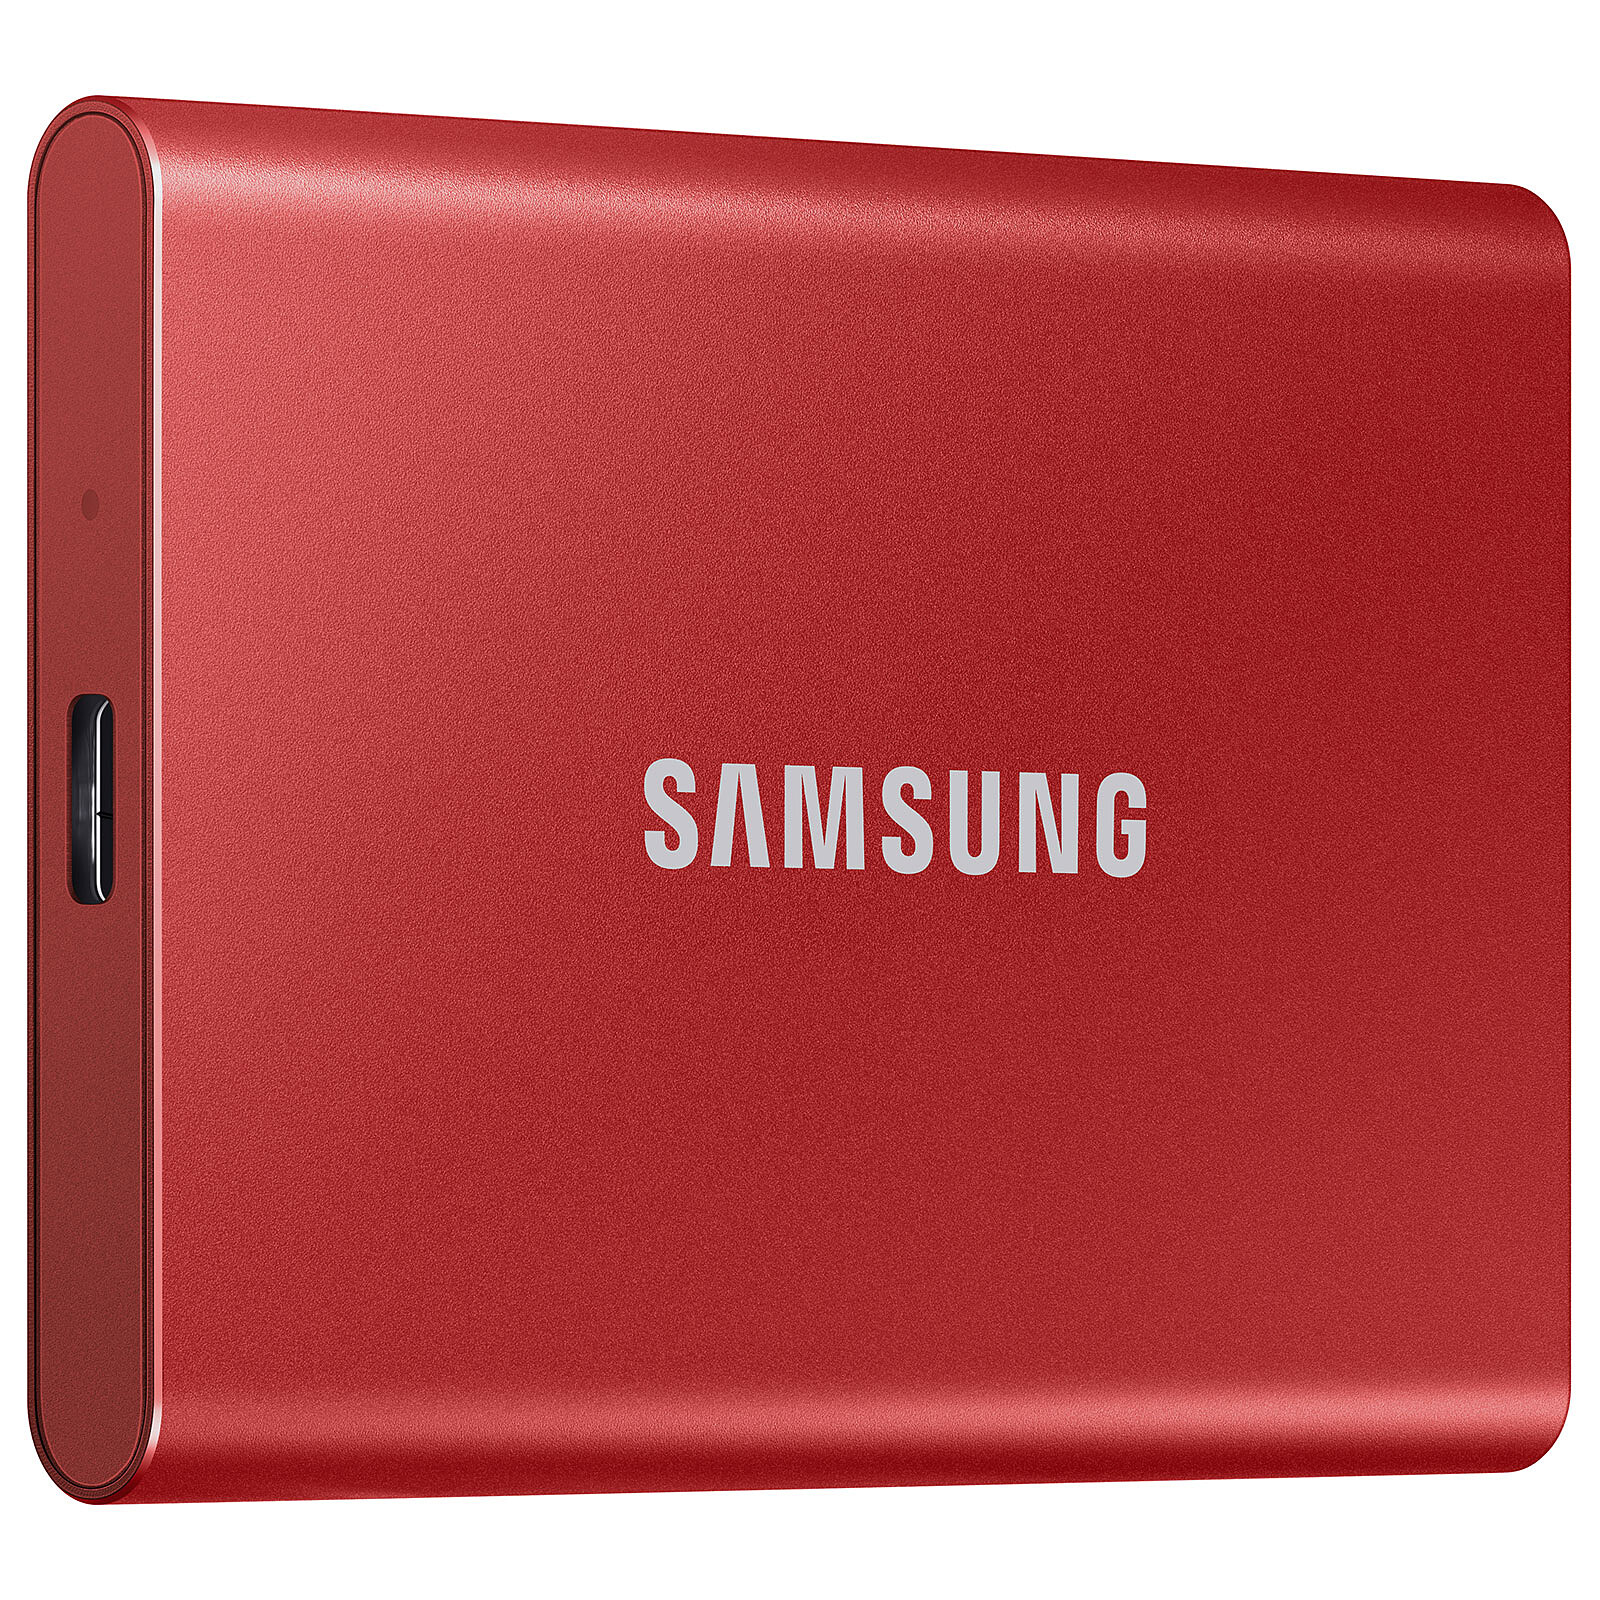 Samsung SSD portatile T7 1Tb Rosso - Hard disk esterno - Garanzia 3 anni  LDLC